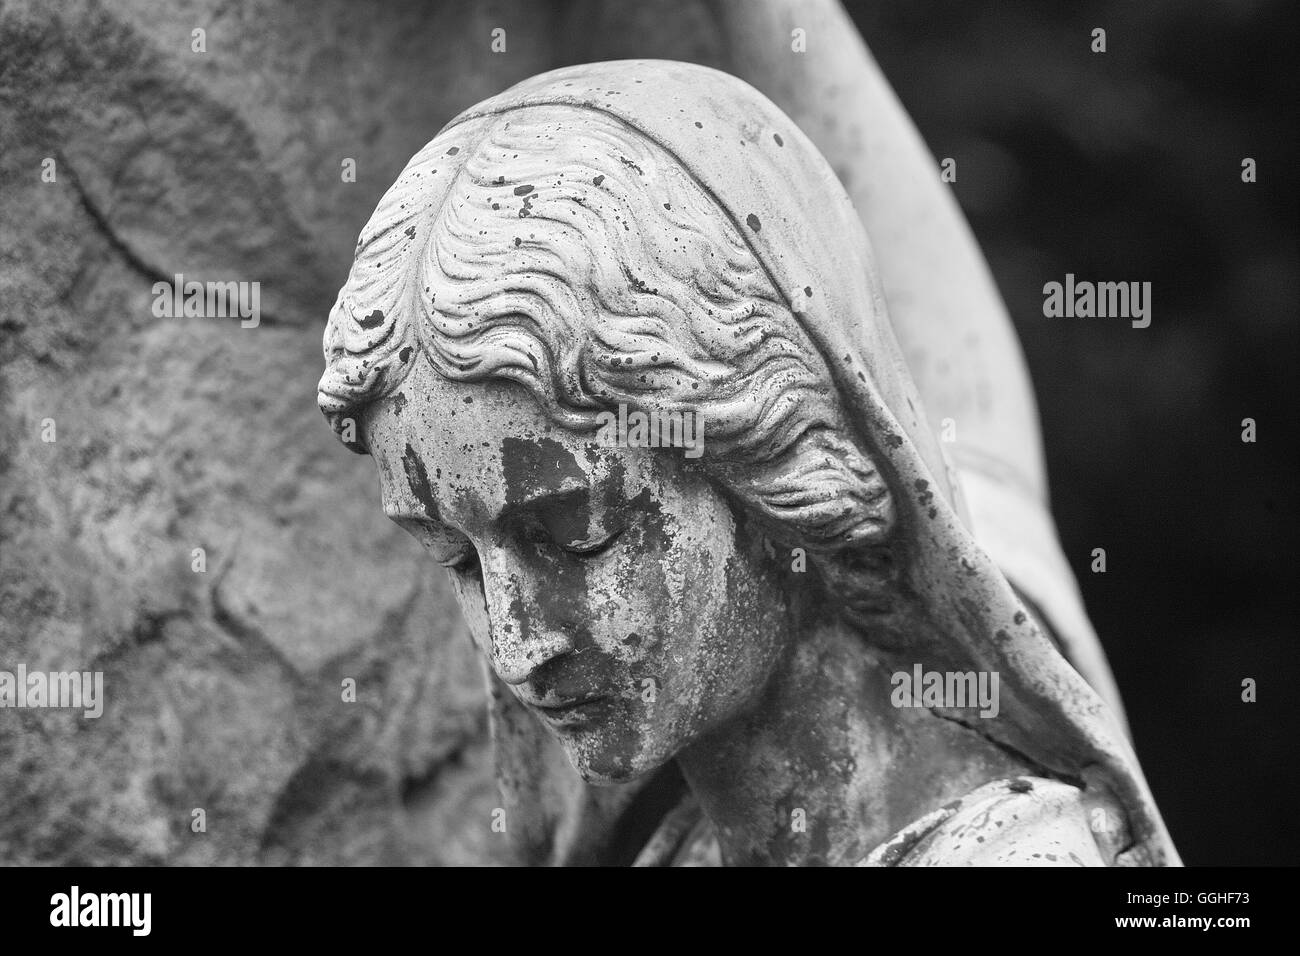 La scultura di donna purtroppo, ragazza, tomba di scultura, purtroppo il volto dolente / grab-skulptur, trauernde frau schwarz-weiss foto Foto Stock